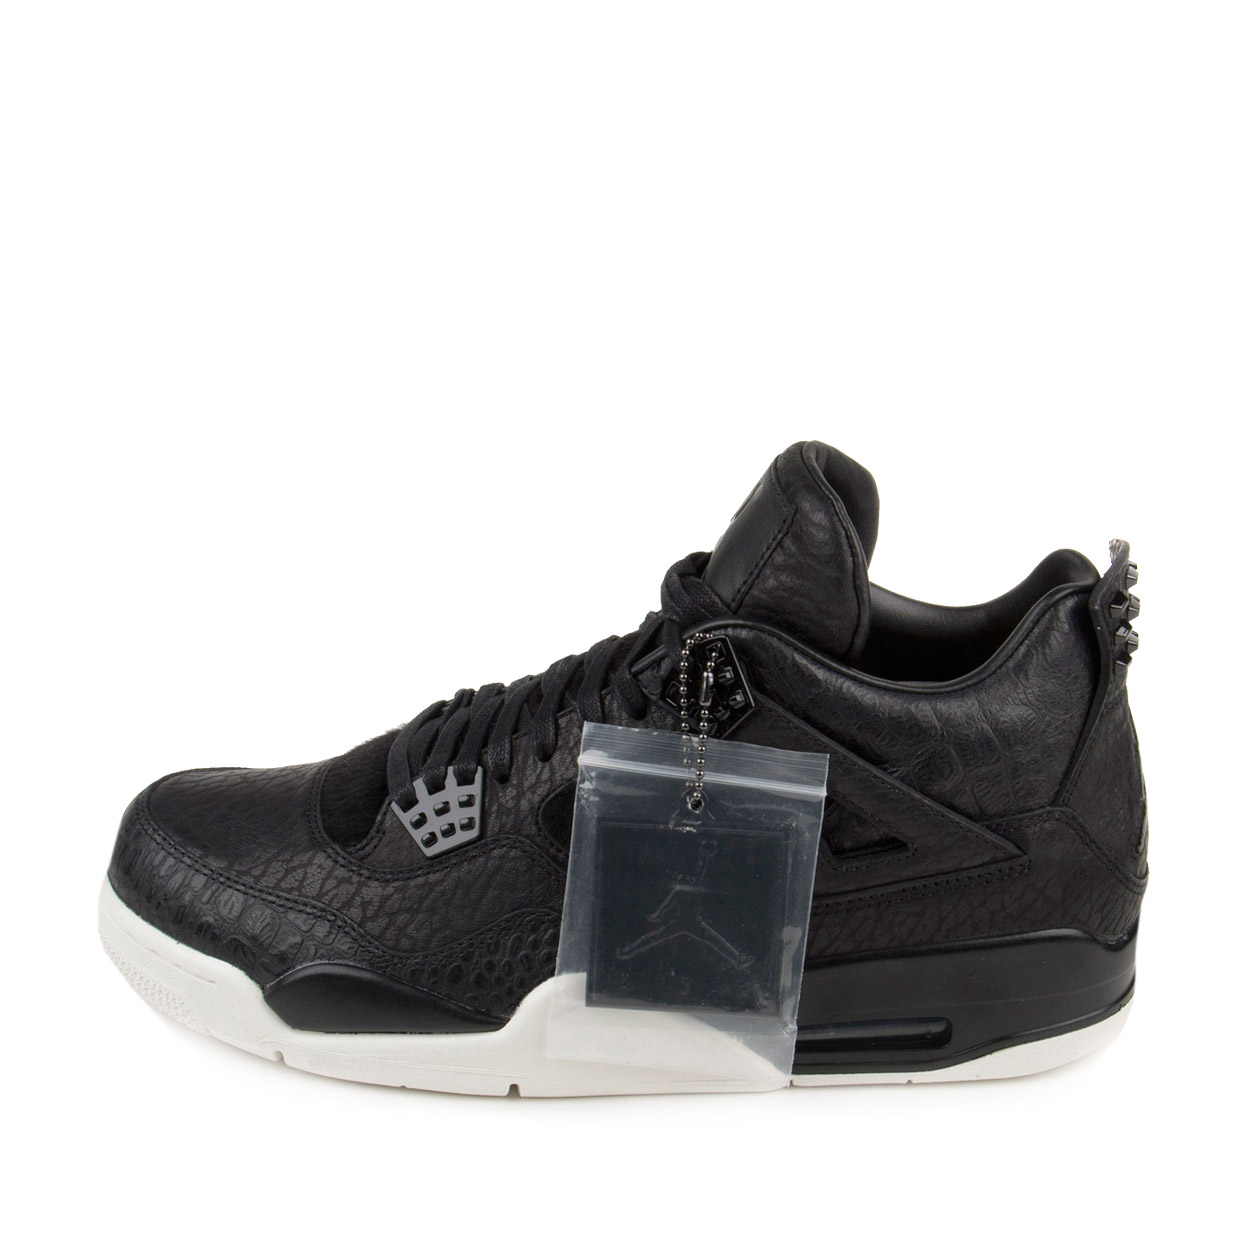 Nike Mens Air Jordan 4 Retro Premium "Pinnacle" Black/Sail 819139-010 - image 2 of 7